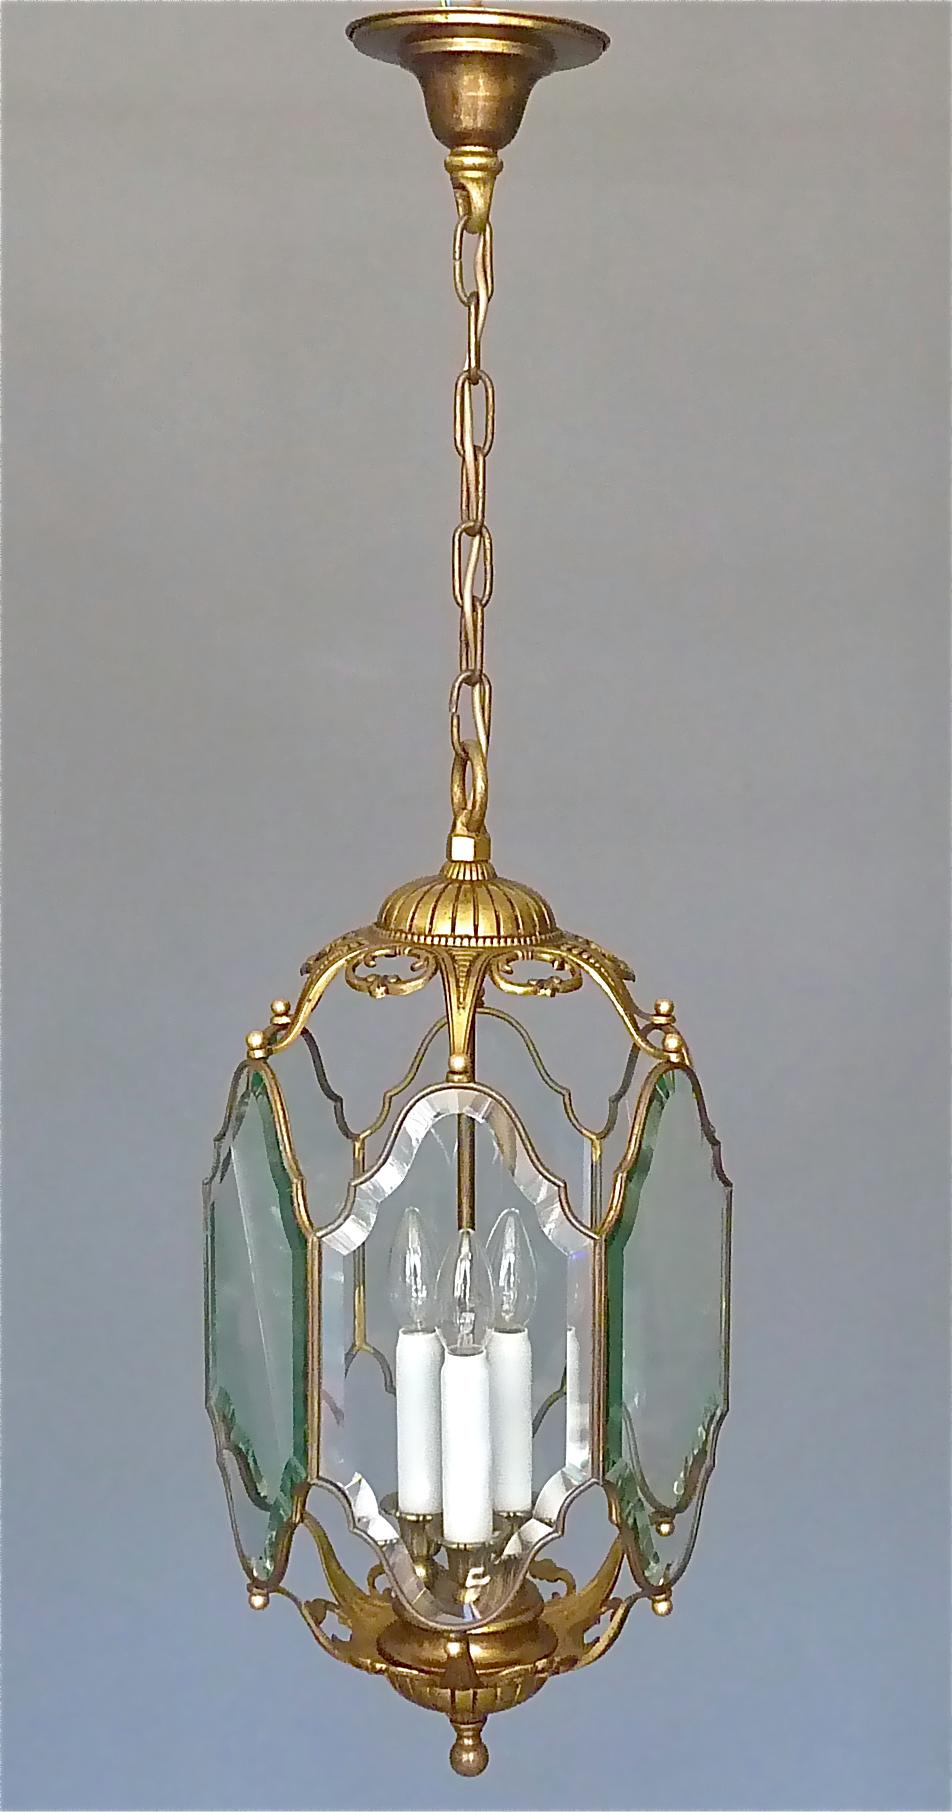 Grande lanterne ou lampe suspendue française ancienne, France vers 1880 à 1920. Réalisé en laiton patiné et en métal bronze, ce corpus lumineux à six faces présente des sections en verre de cristal facetté et biseauté taillées à la main, le centre